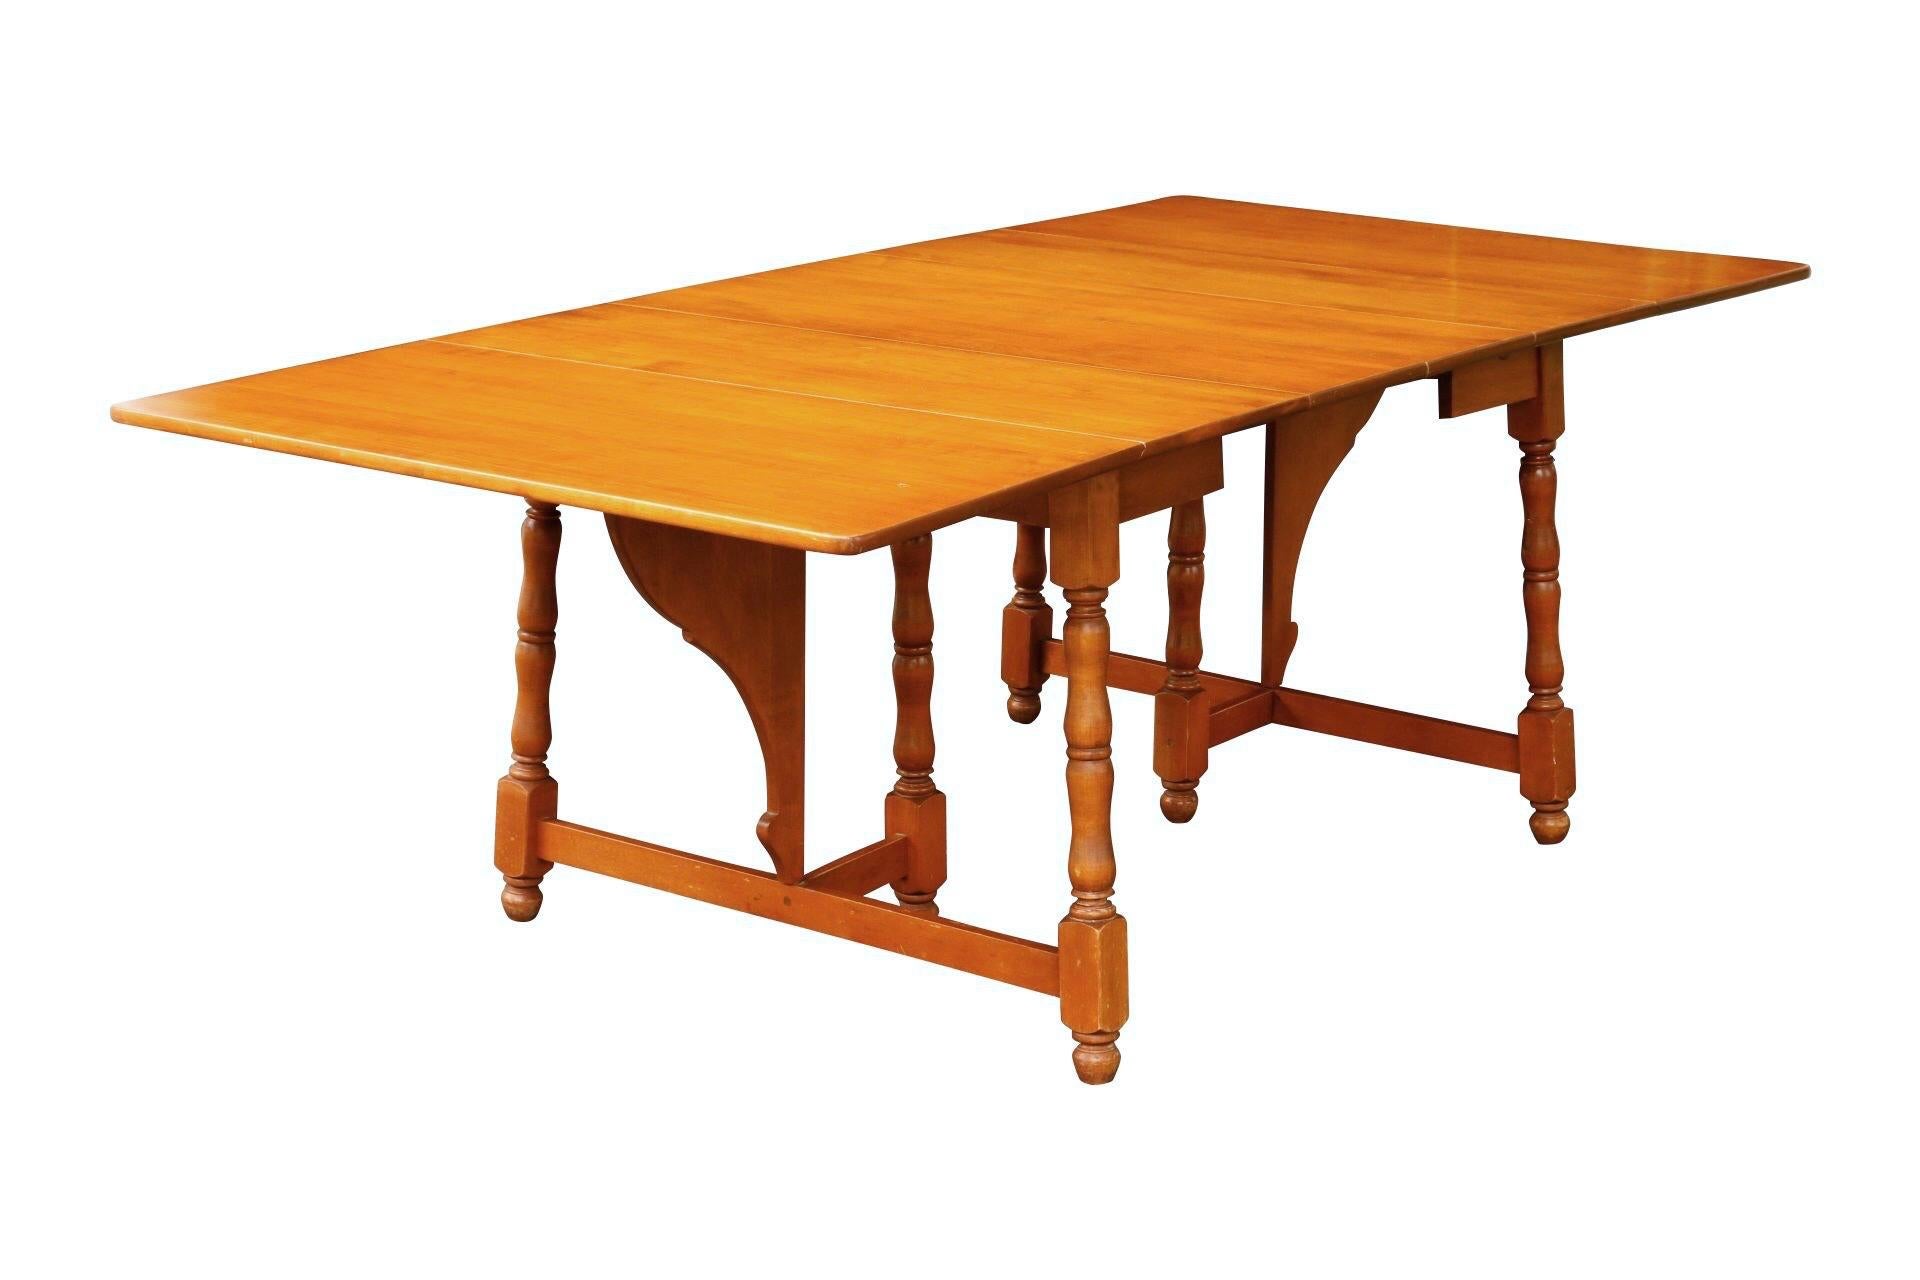 Une table de salle à manger à abattant de style traditionnel fabriquée par Heywood Wakefield. Les feuilles tombantes se soulèvent, soutenues par des supports papillons, pour former une table rectangulaire pouvant accueillir six personnes. La table